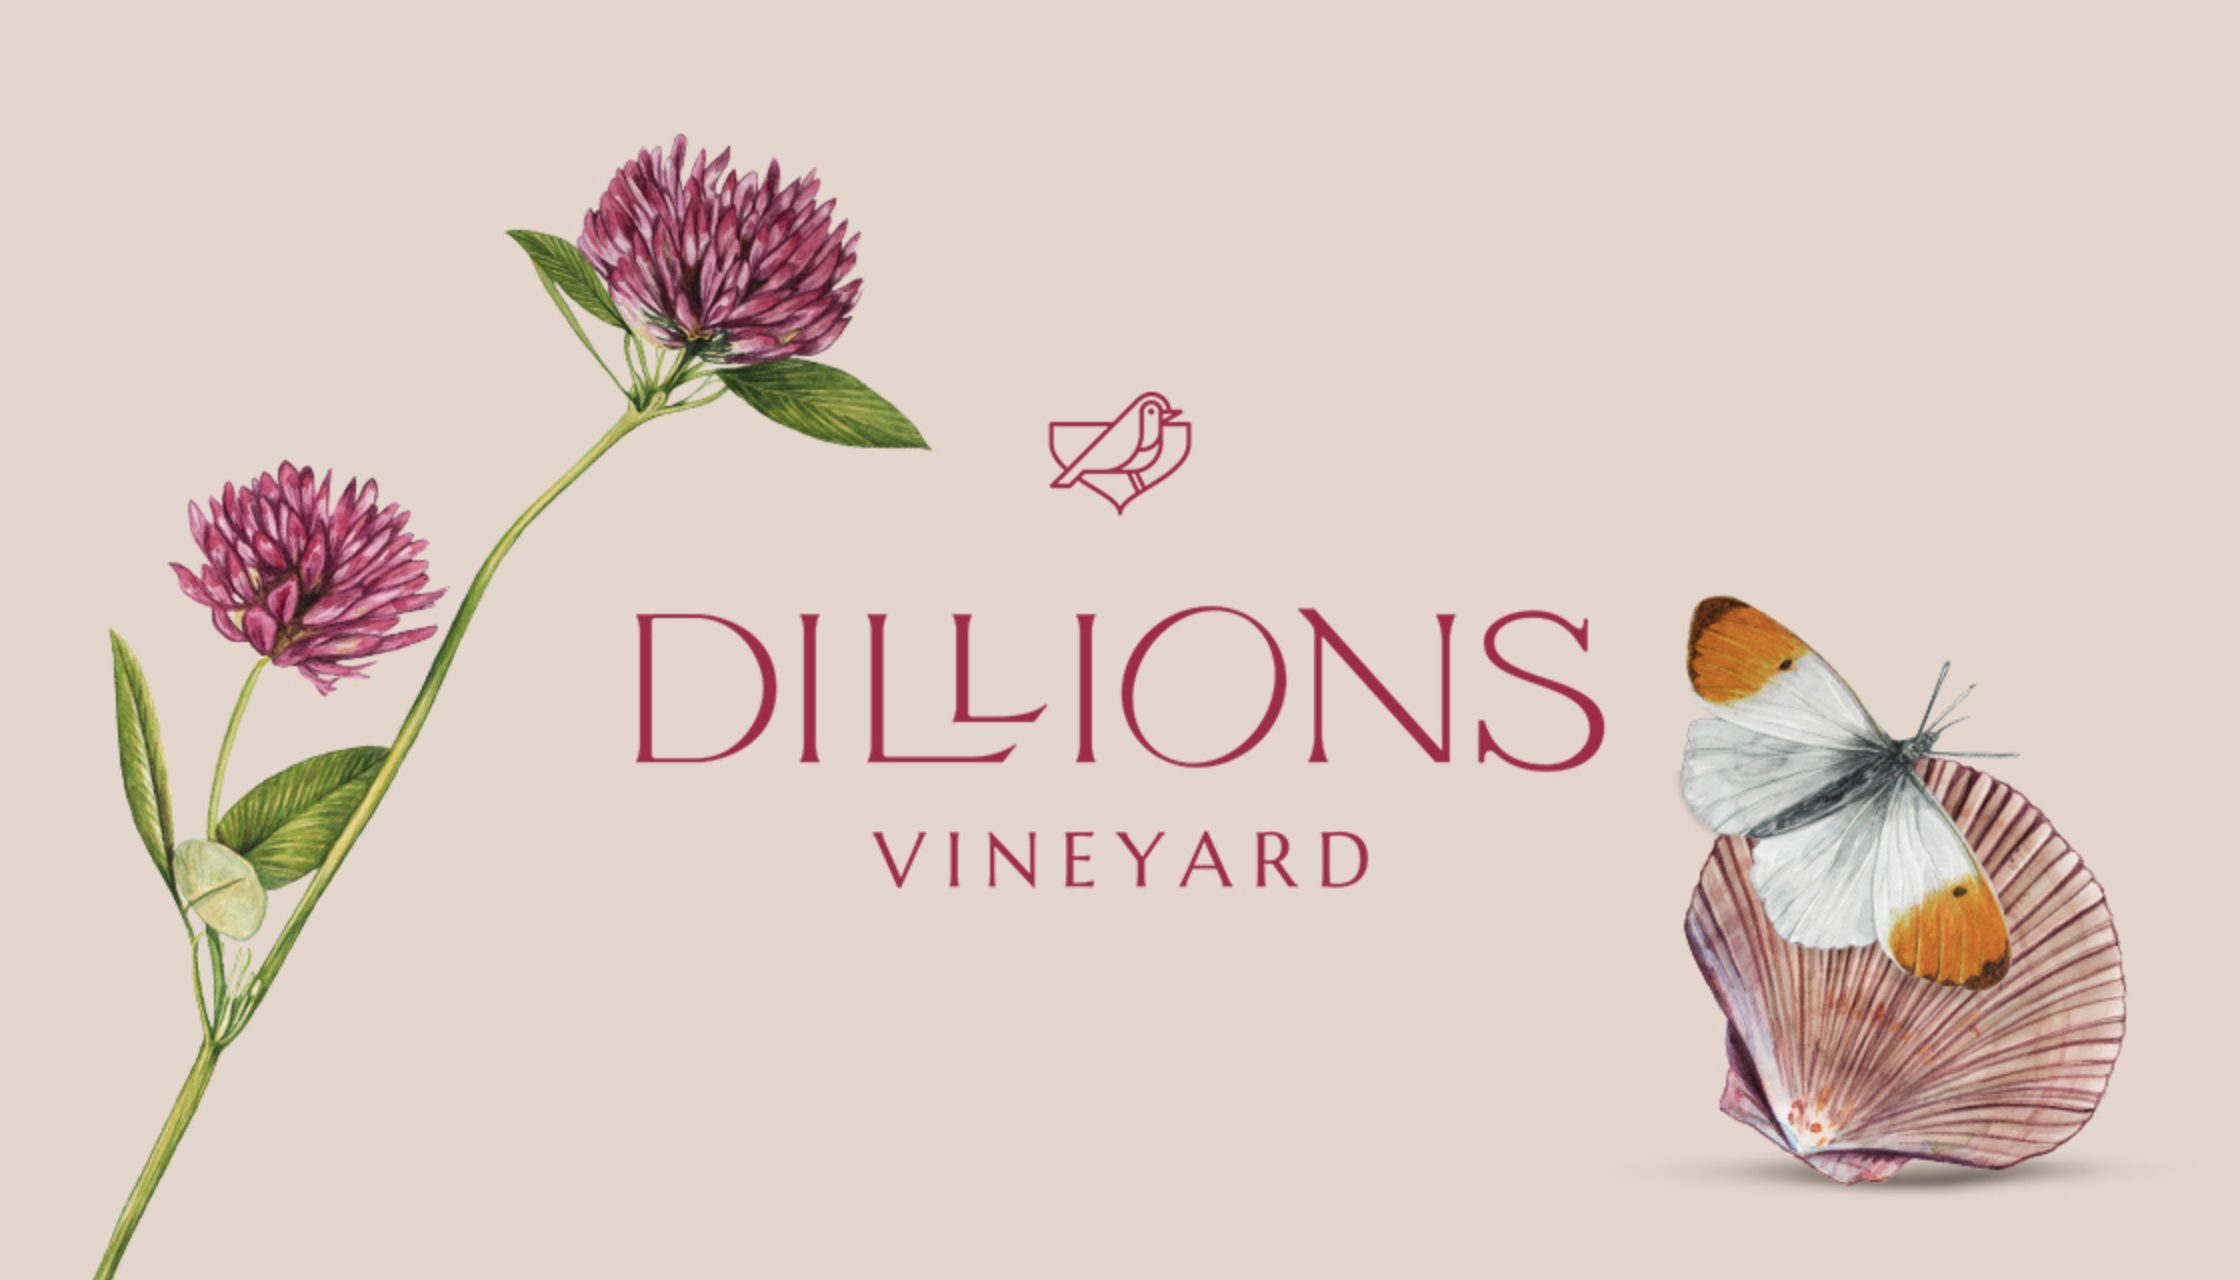 Sillions vineyard logo design rose wine branding